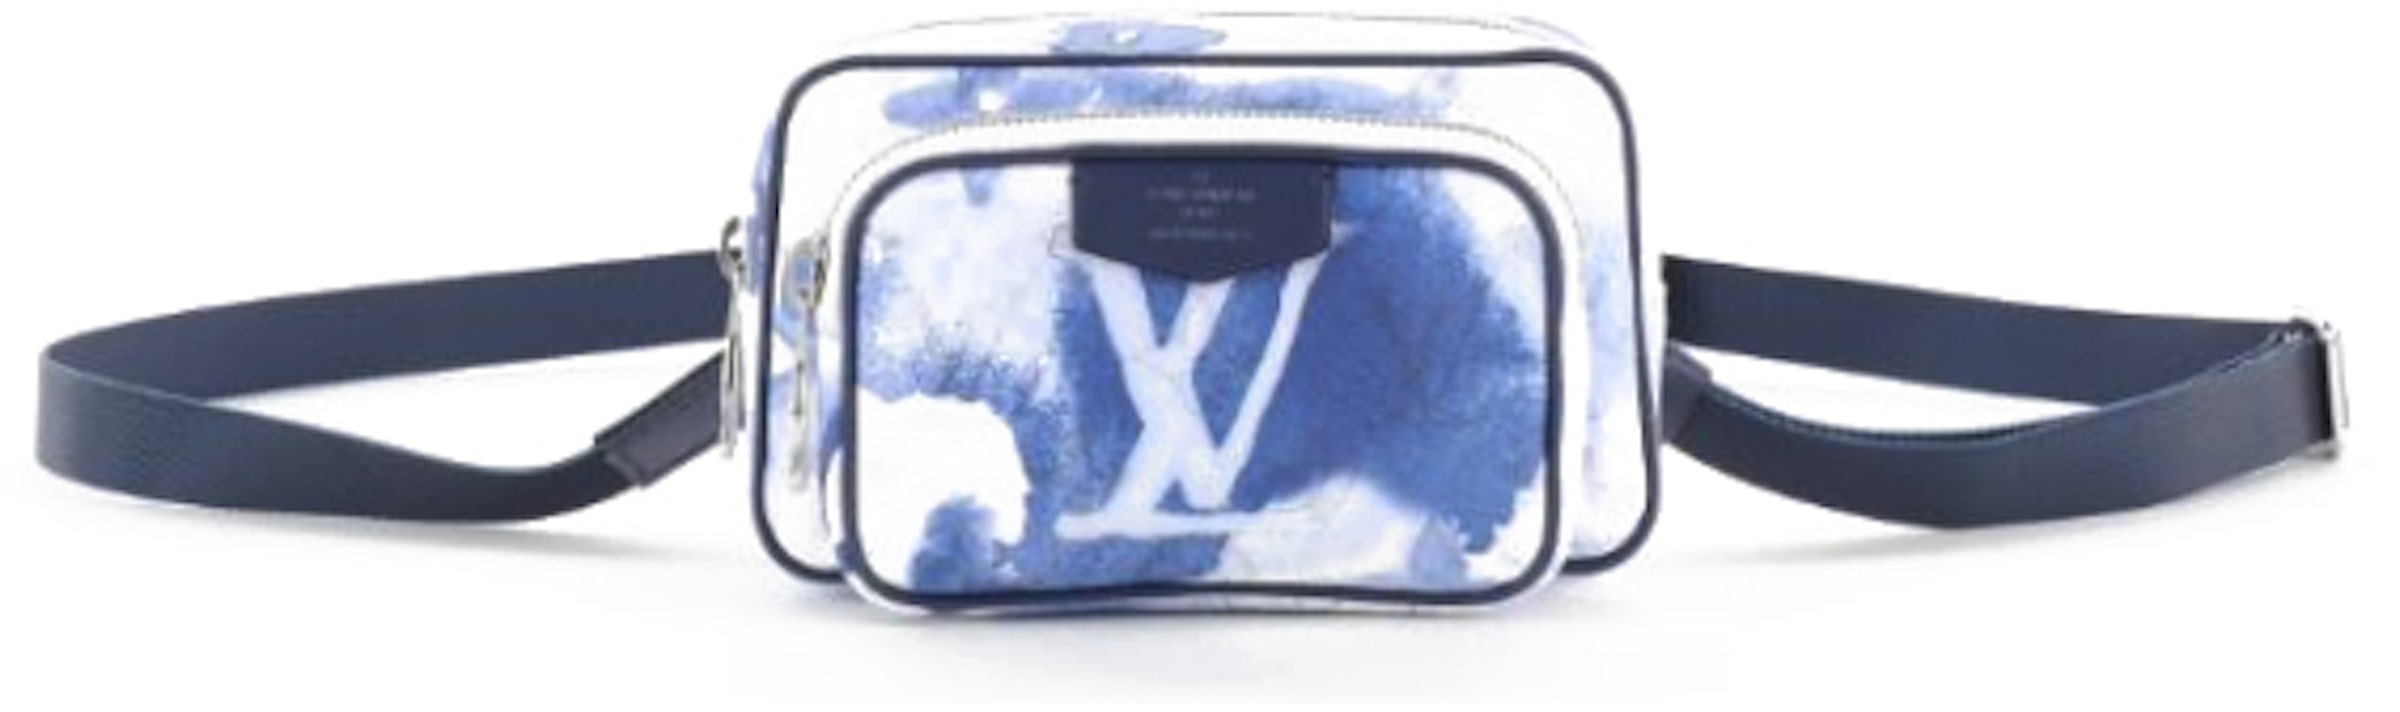 Louis Vuitton Monogram Watercolor Outdoor Pouch Blue Unisex 